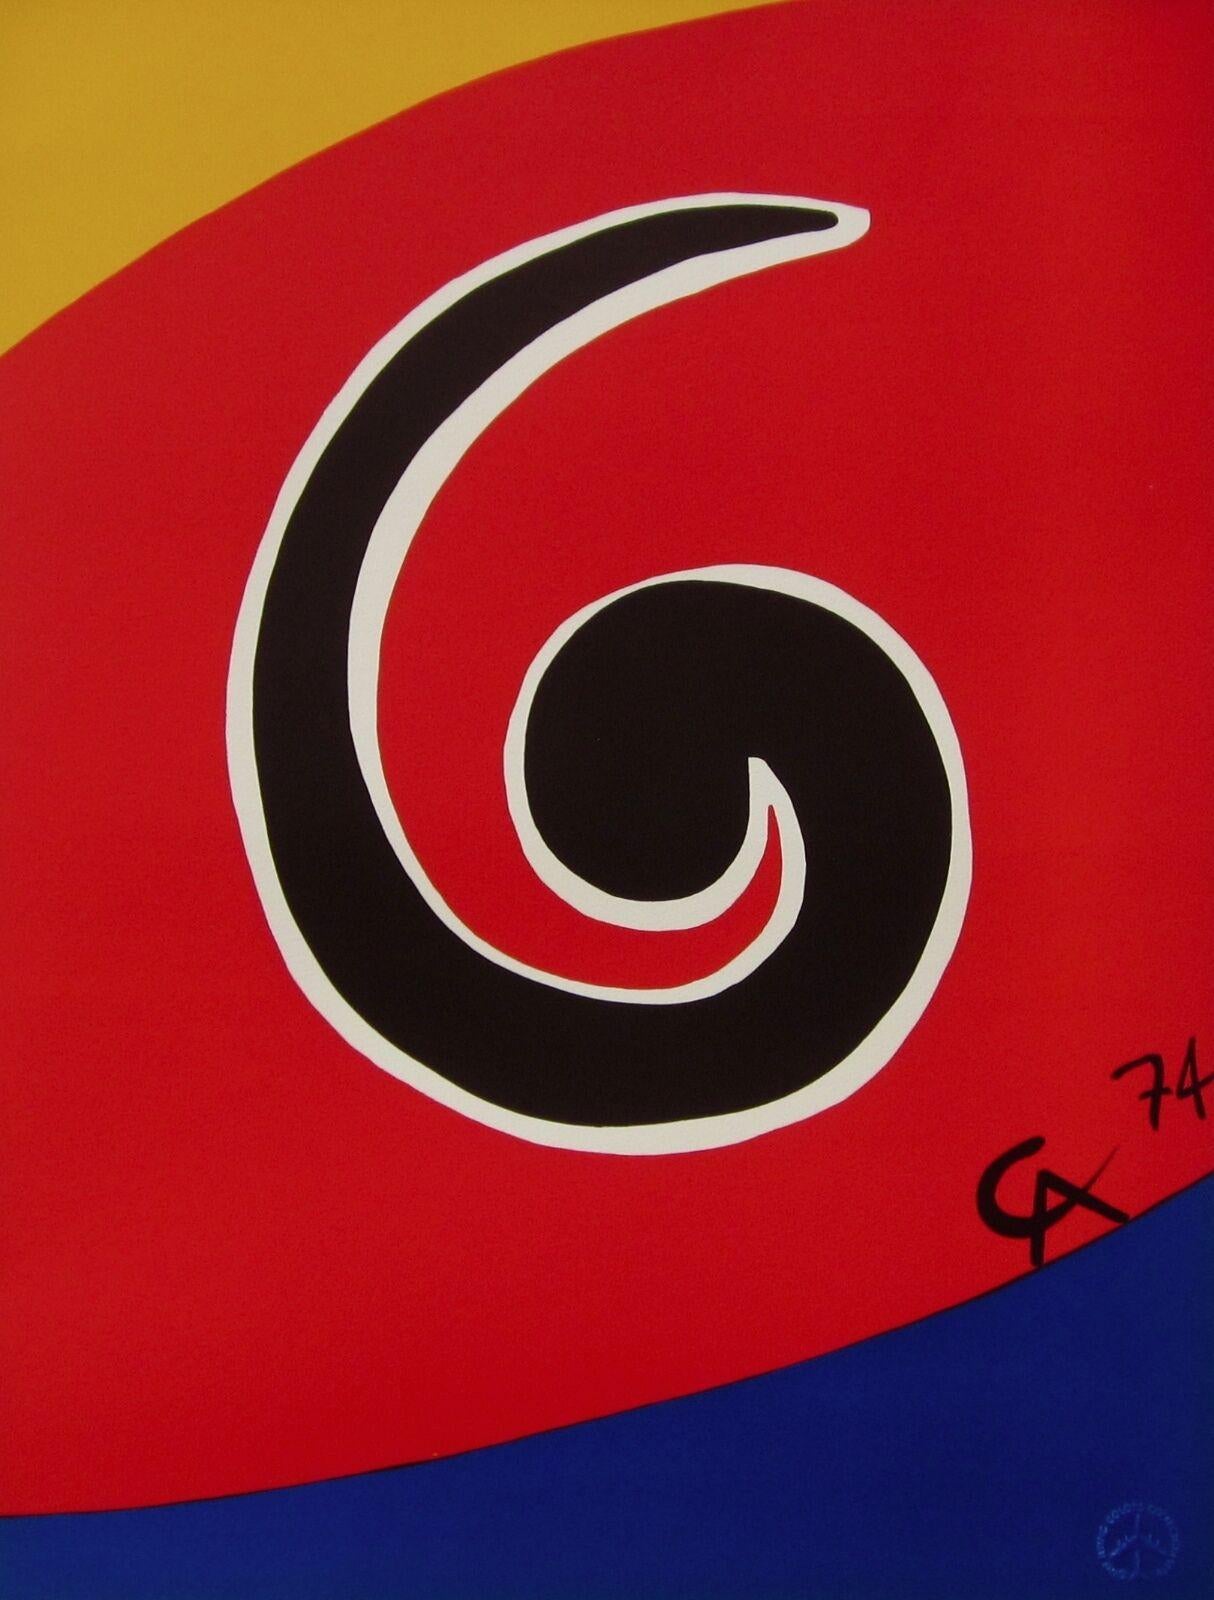 Artistics : Alexander Calder (1898-1976)
Titre : Sky Swirl (de la Collection Flying Colors de Braniff International Airways)
Année : 1974
Support : Lithographie sur papier Arches 
Taille : 20 x 26 pouces
Condit : Excellent
Edition : 3,000, plus les